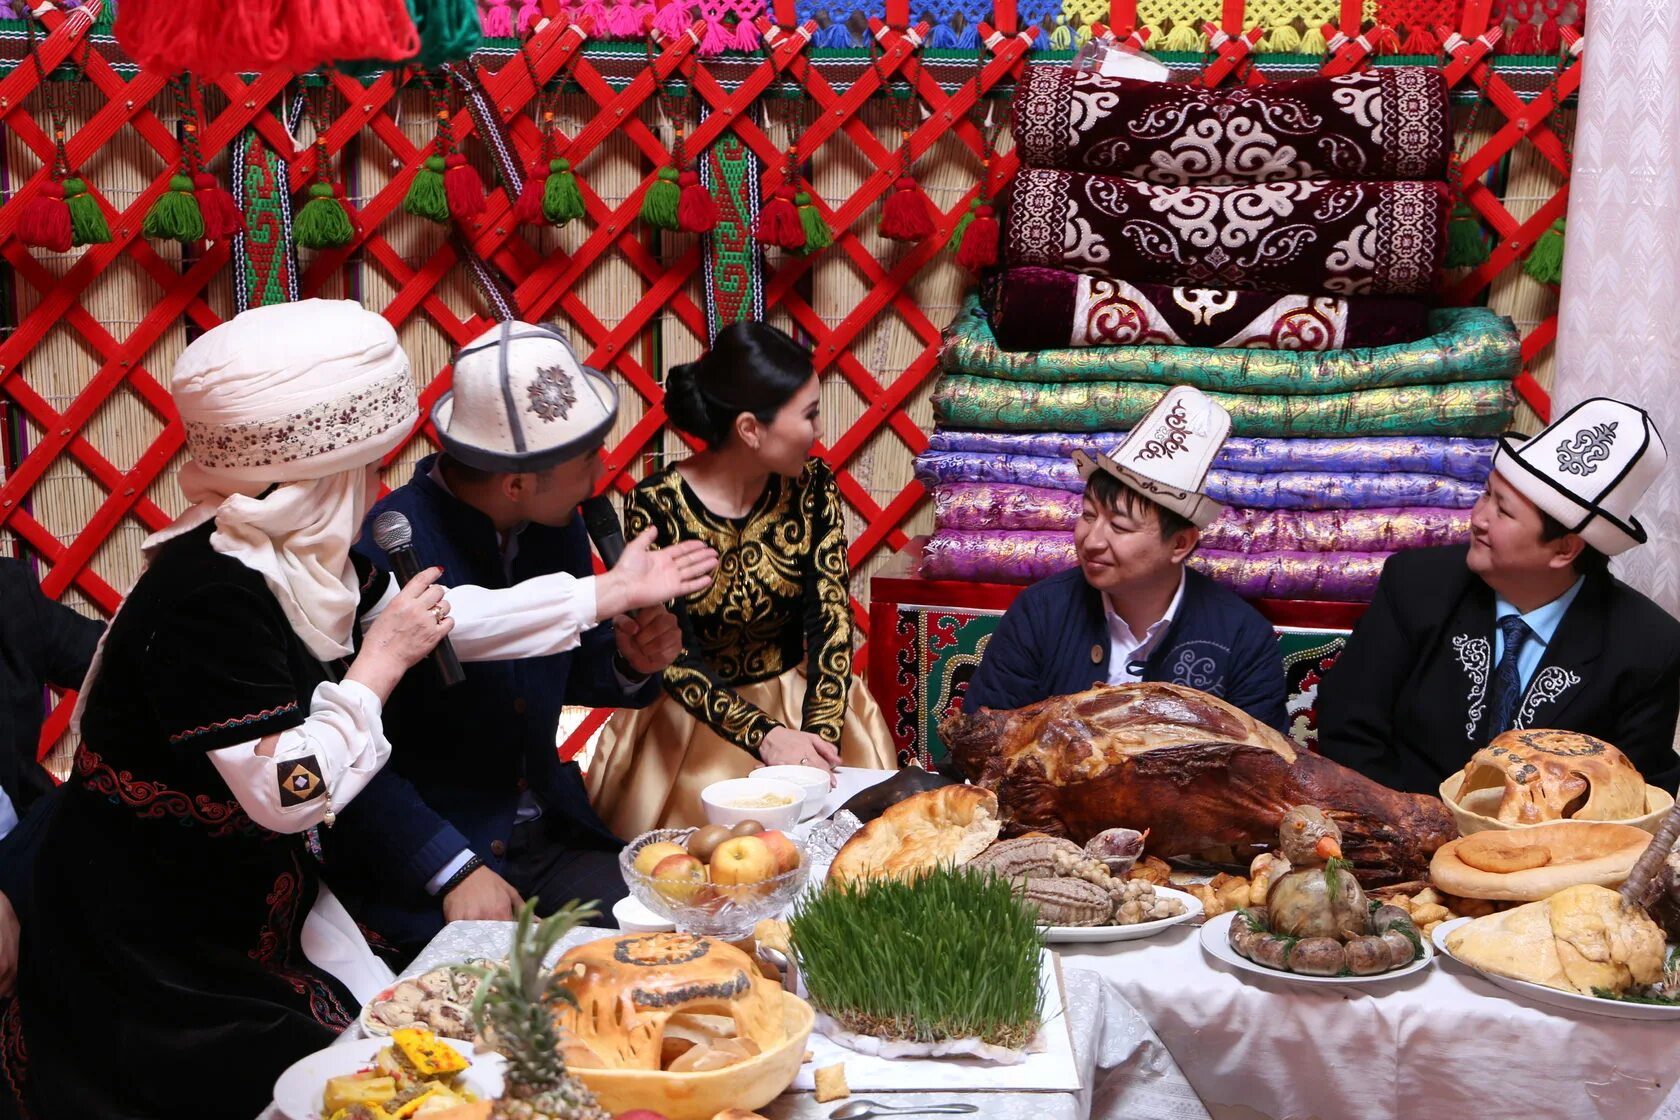 Праздники киргизов. Традиции Нооруз Киргизия. Кыргызстан Нооруз юрта. Нооруз майрам Киргизия юрта. Национальные блюдо Киргизии Нооруз.